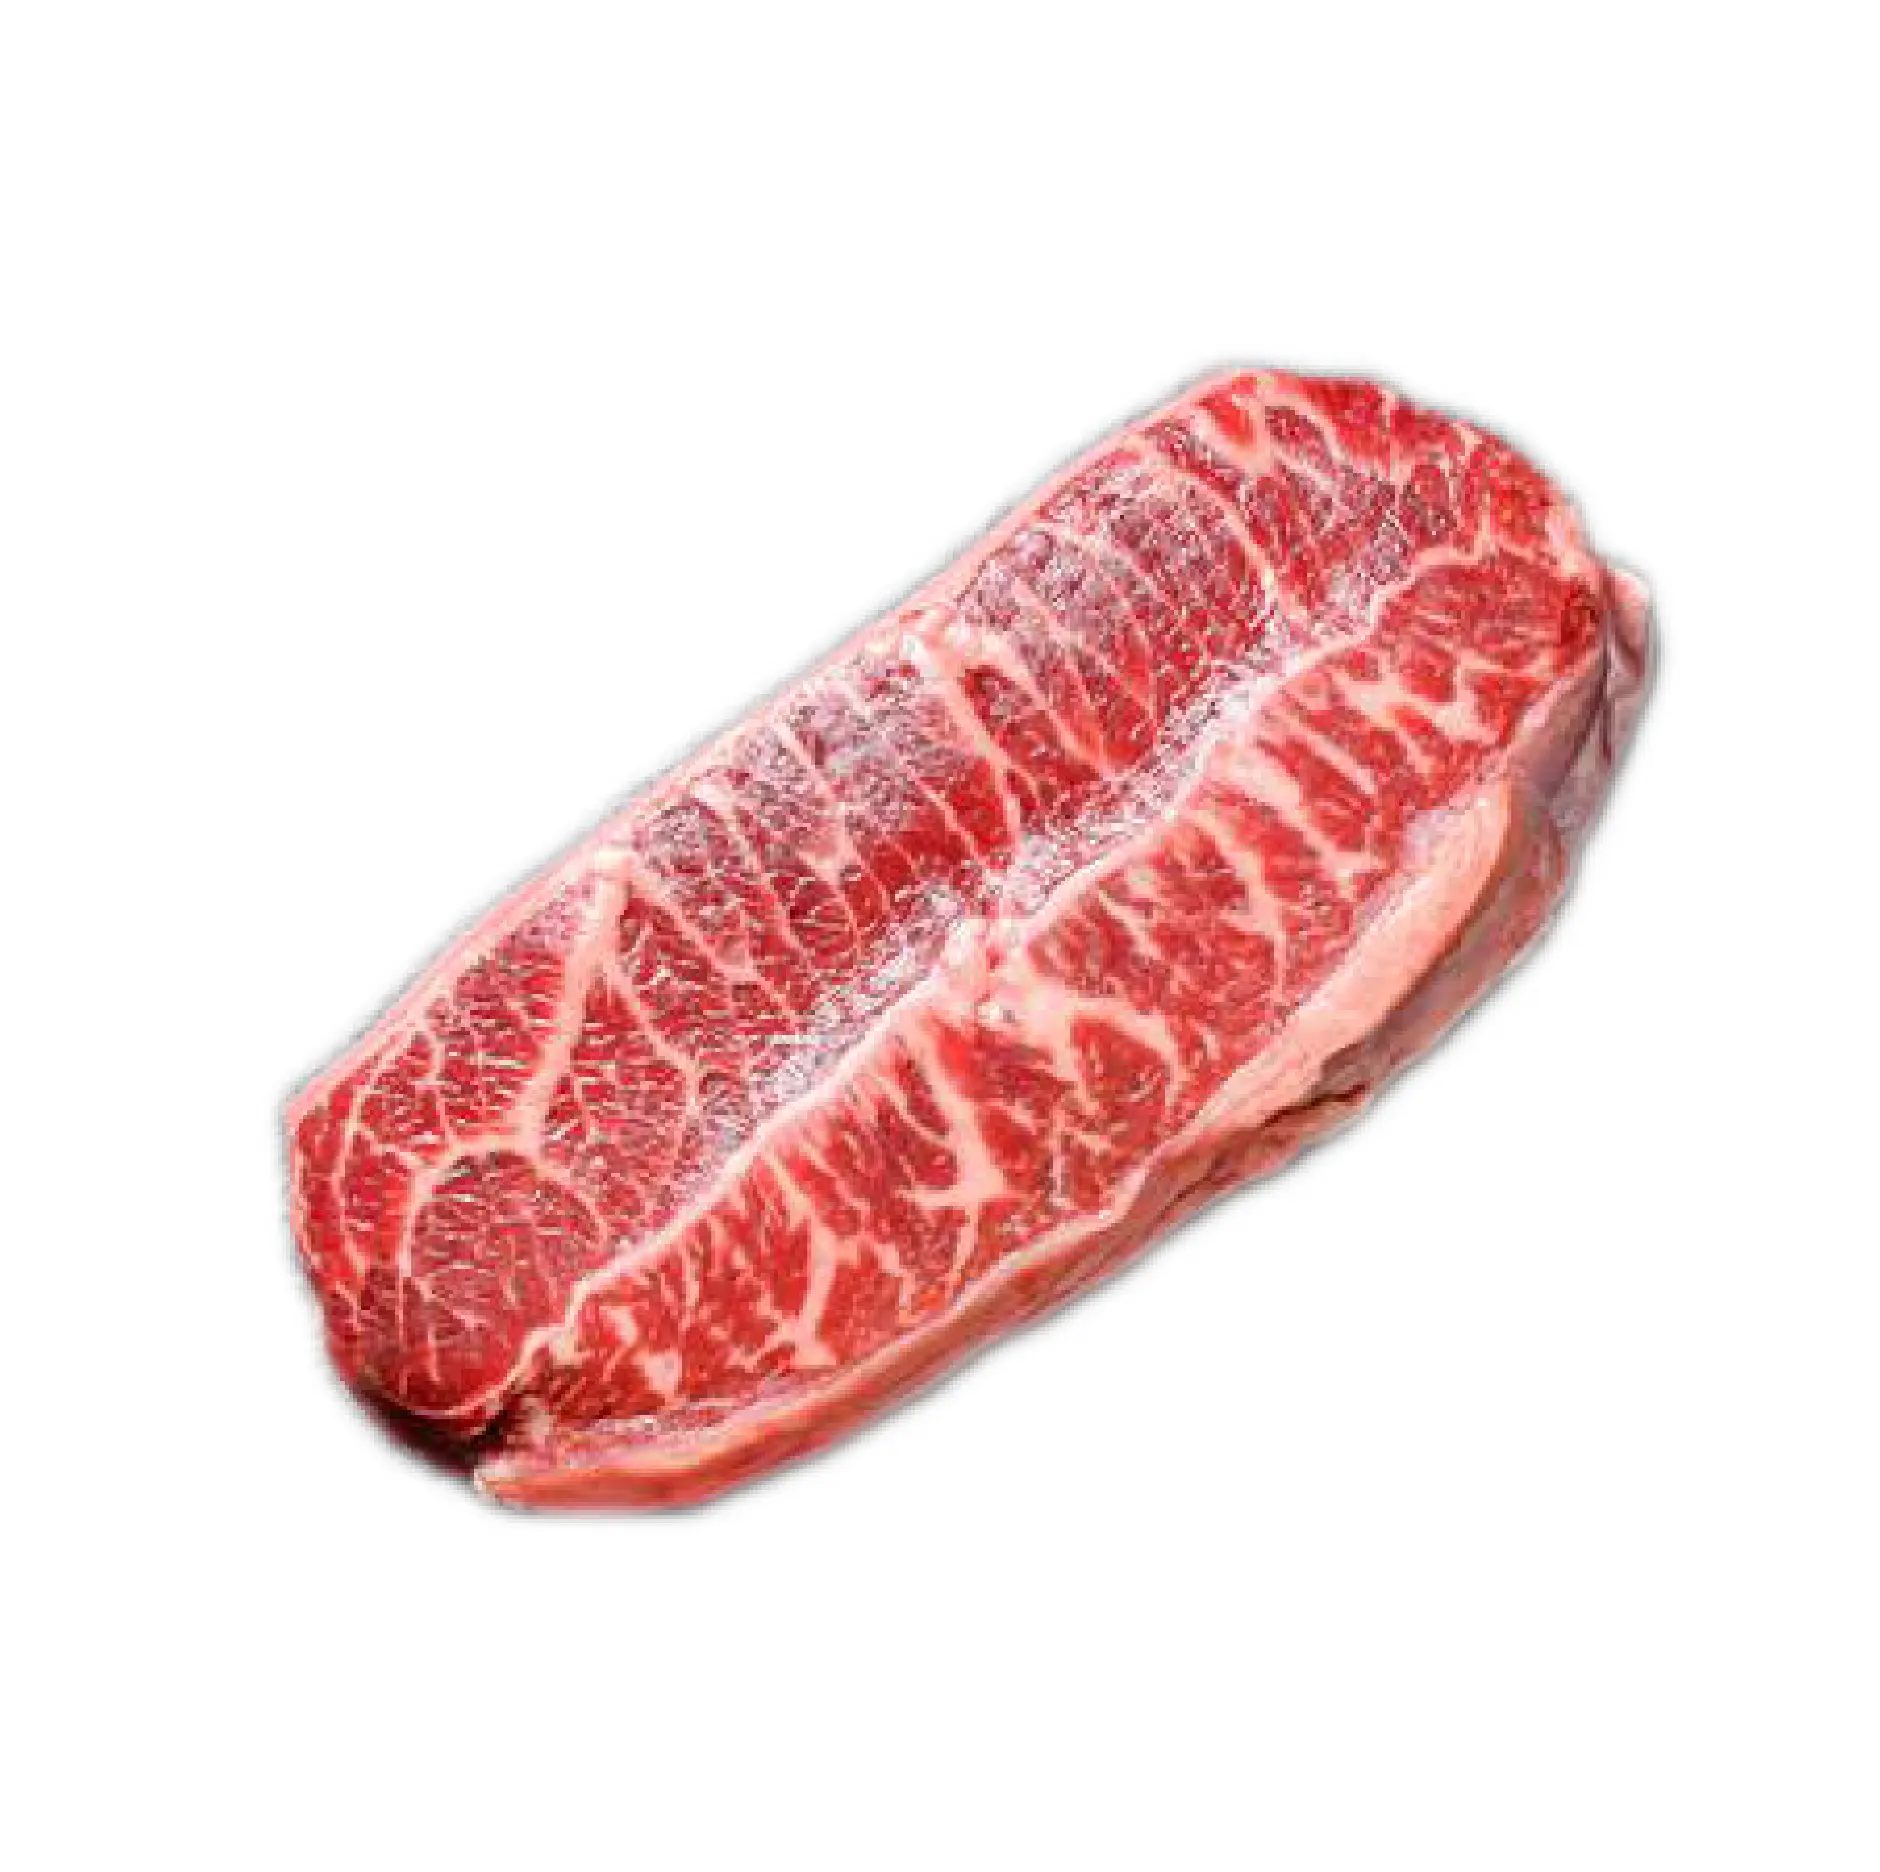 Стейк С устричным лезвием-1 кг мяса для резки замороженной Халяльной Говядины без костей на экспорт